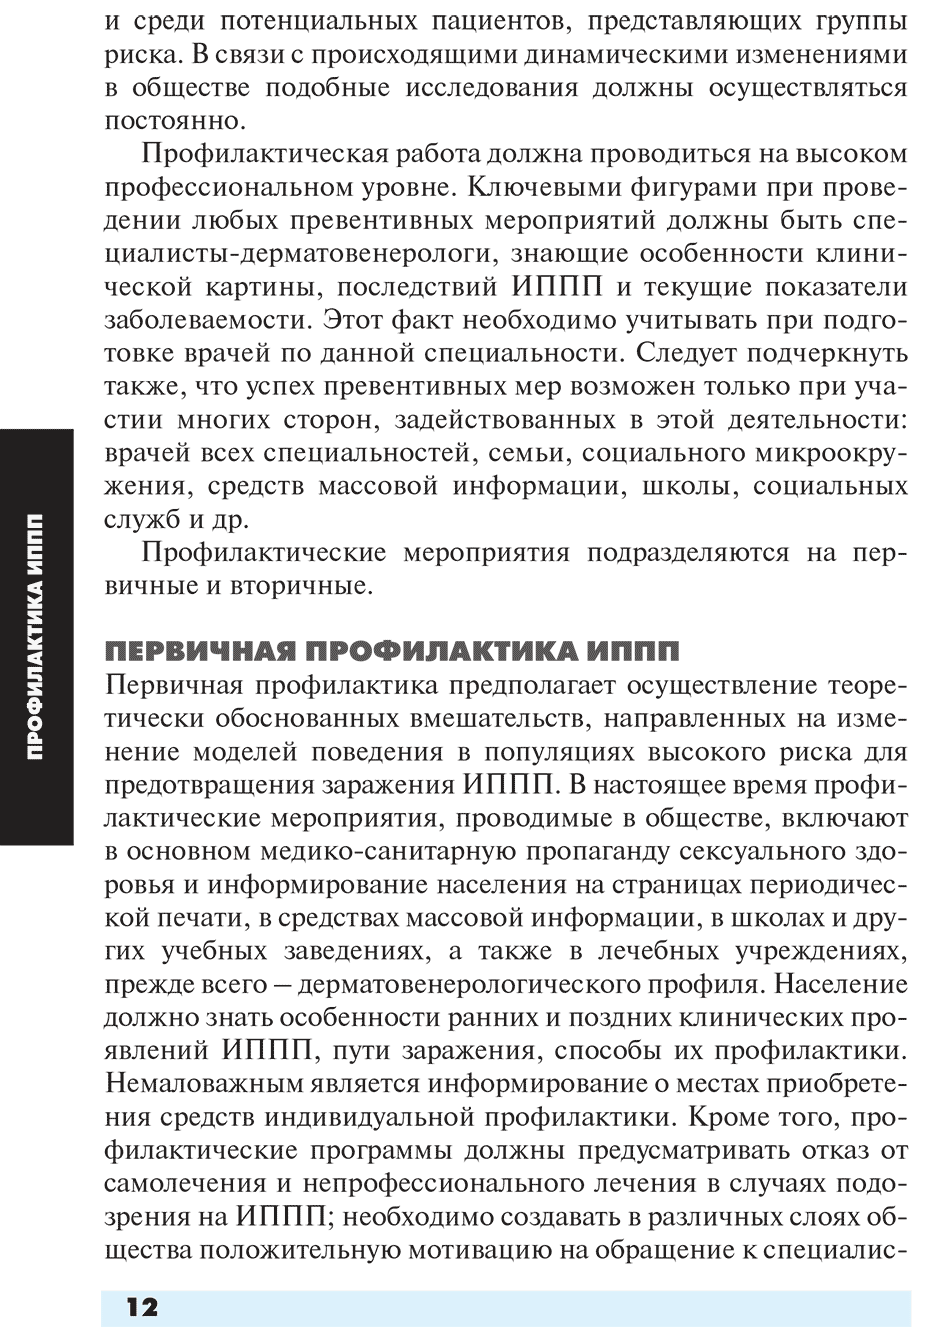 Пример страницы из книги "Инфекции, передаваемые половым путем" - Соколовский Е. В., Савичева А. М., Домейка М.